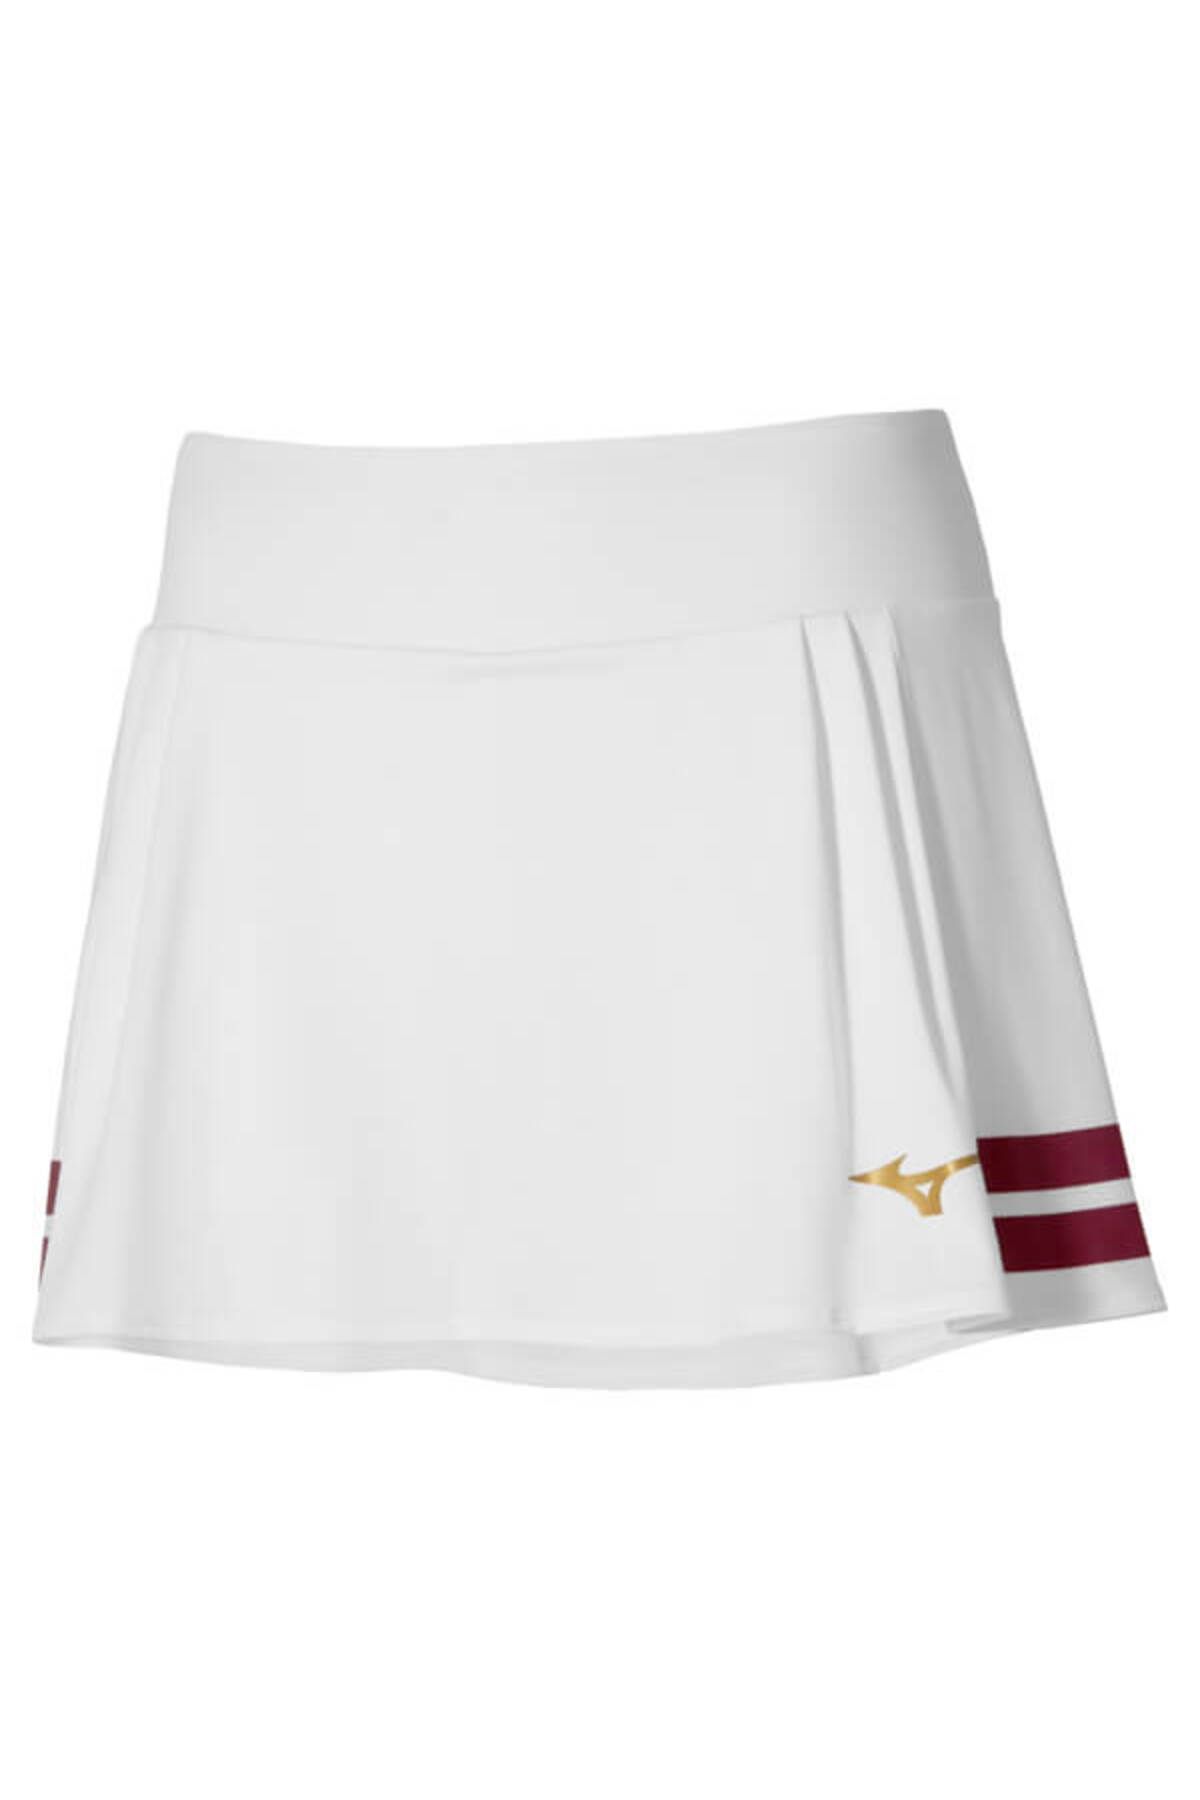 Mizuno Printed Flying Skirt Kadın Tenis Eteği Beyaz